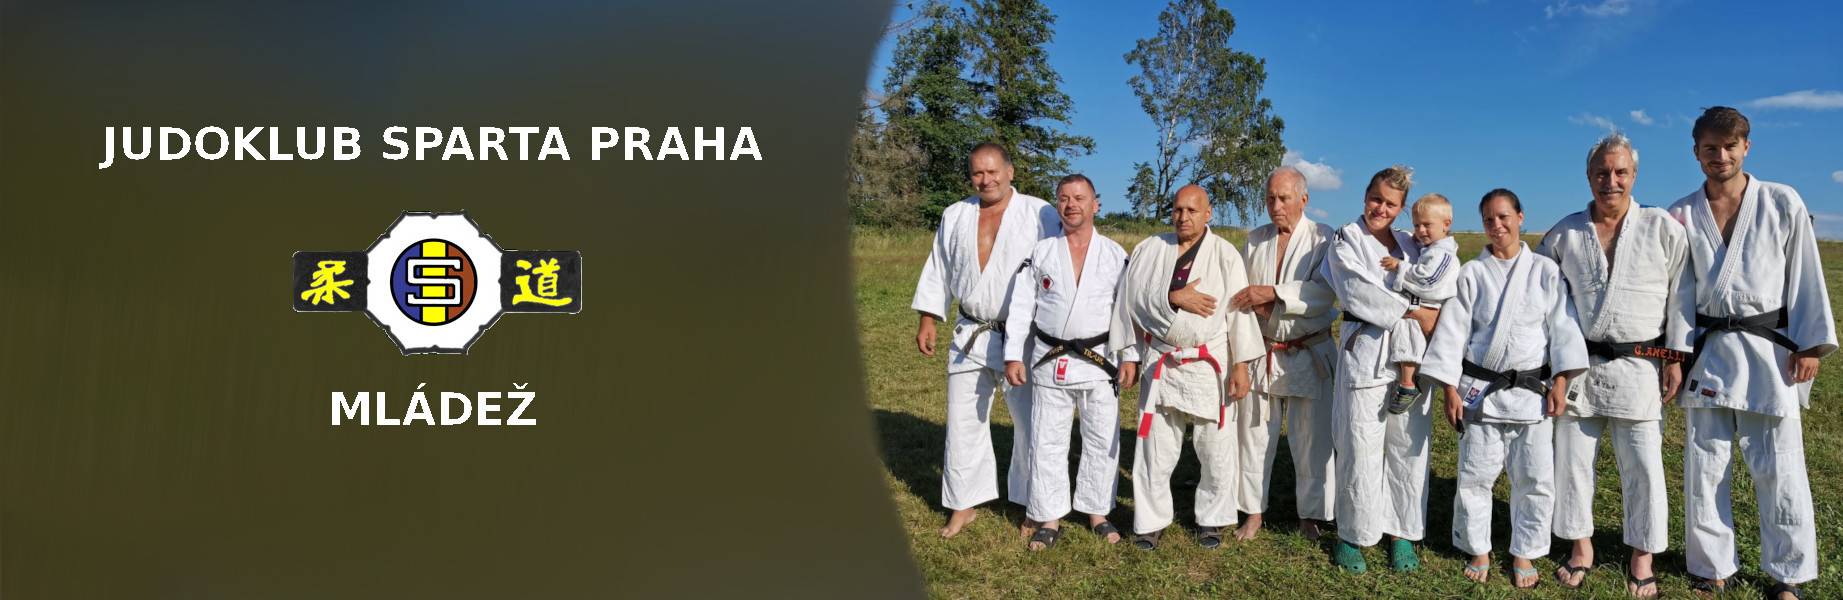 Judoklub Sparta Praha – mládež